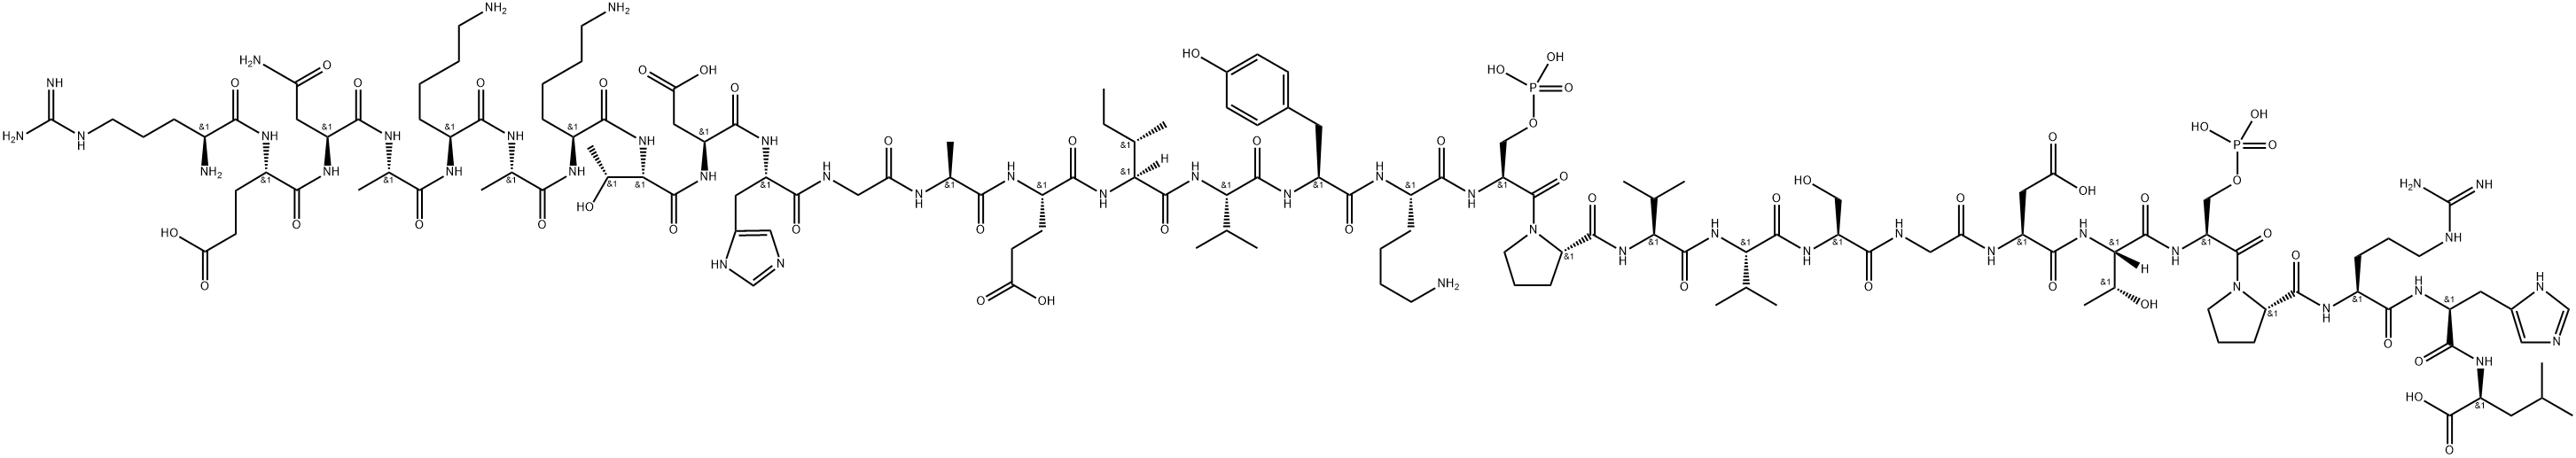 (Ser(POH)3·)-Tau Peptide (379-408) Structure